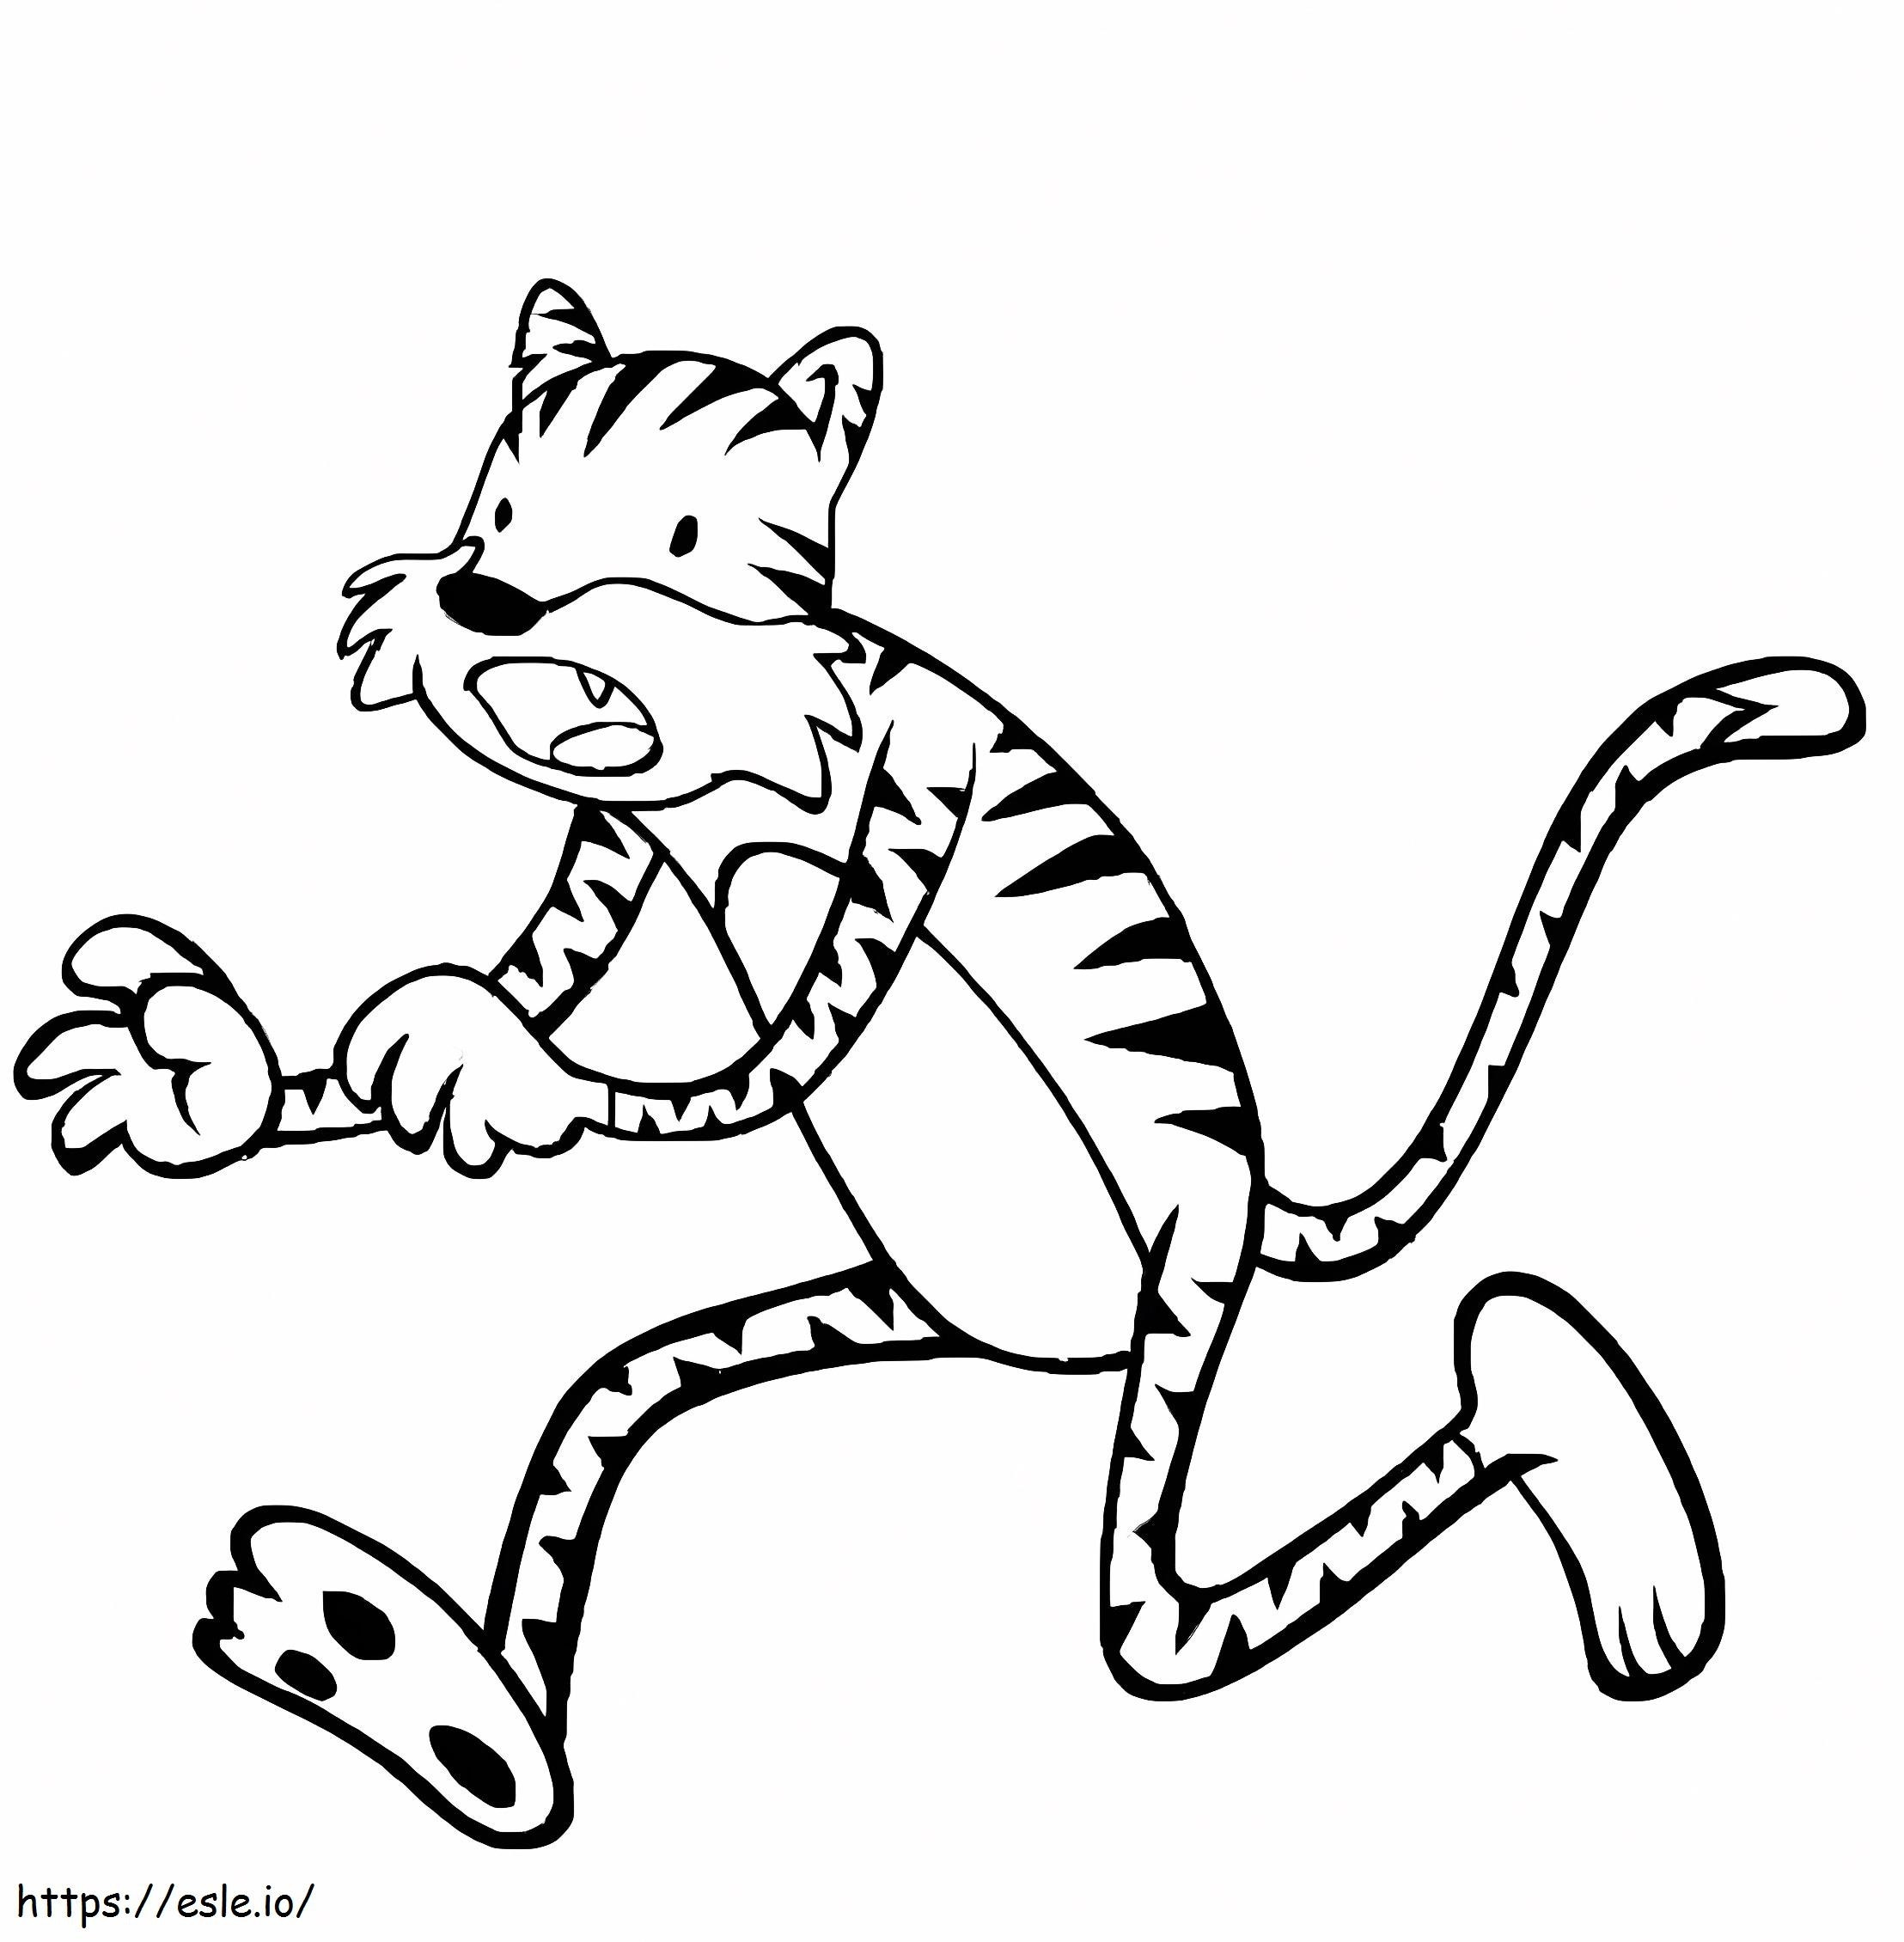 Desen de tigru care alergă de colorat